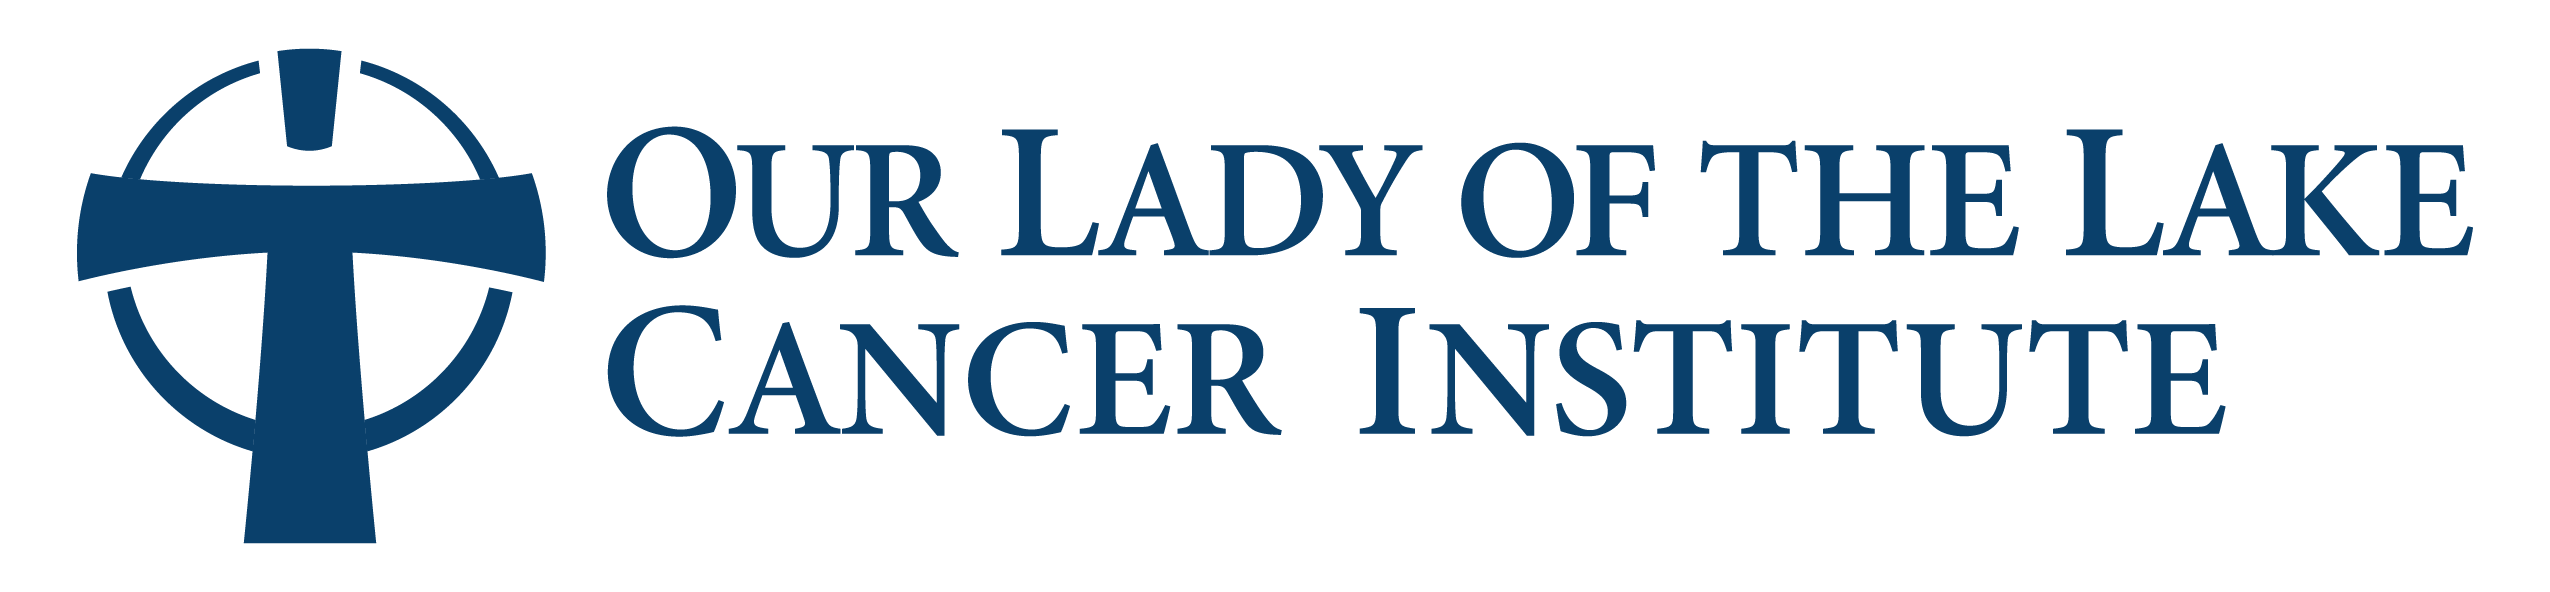 OLOL Cancer Logo